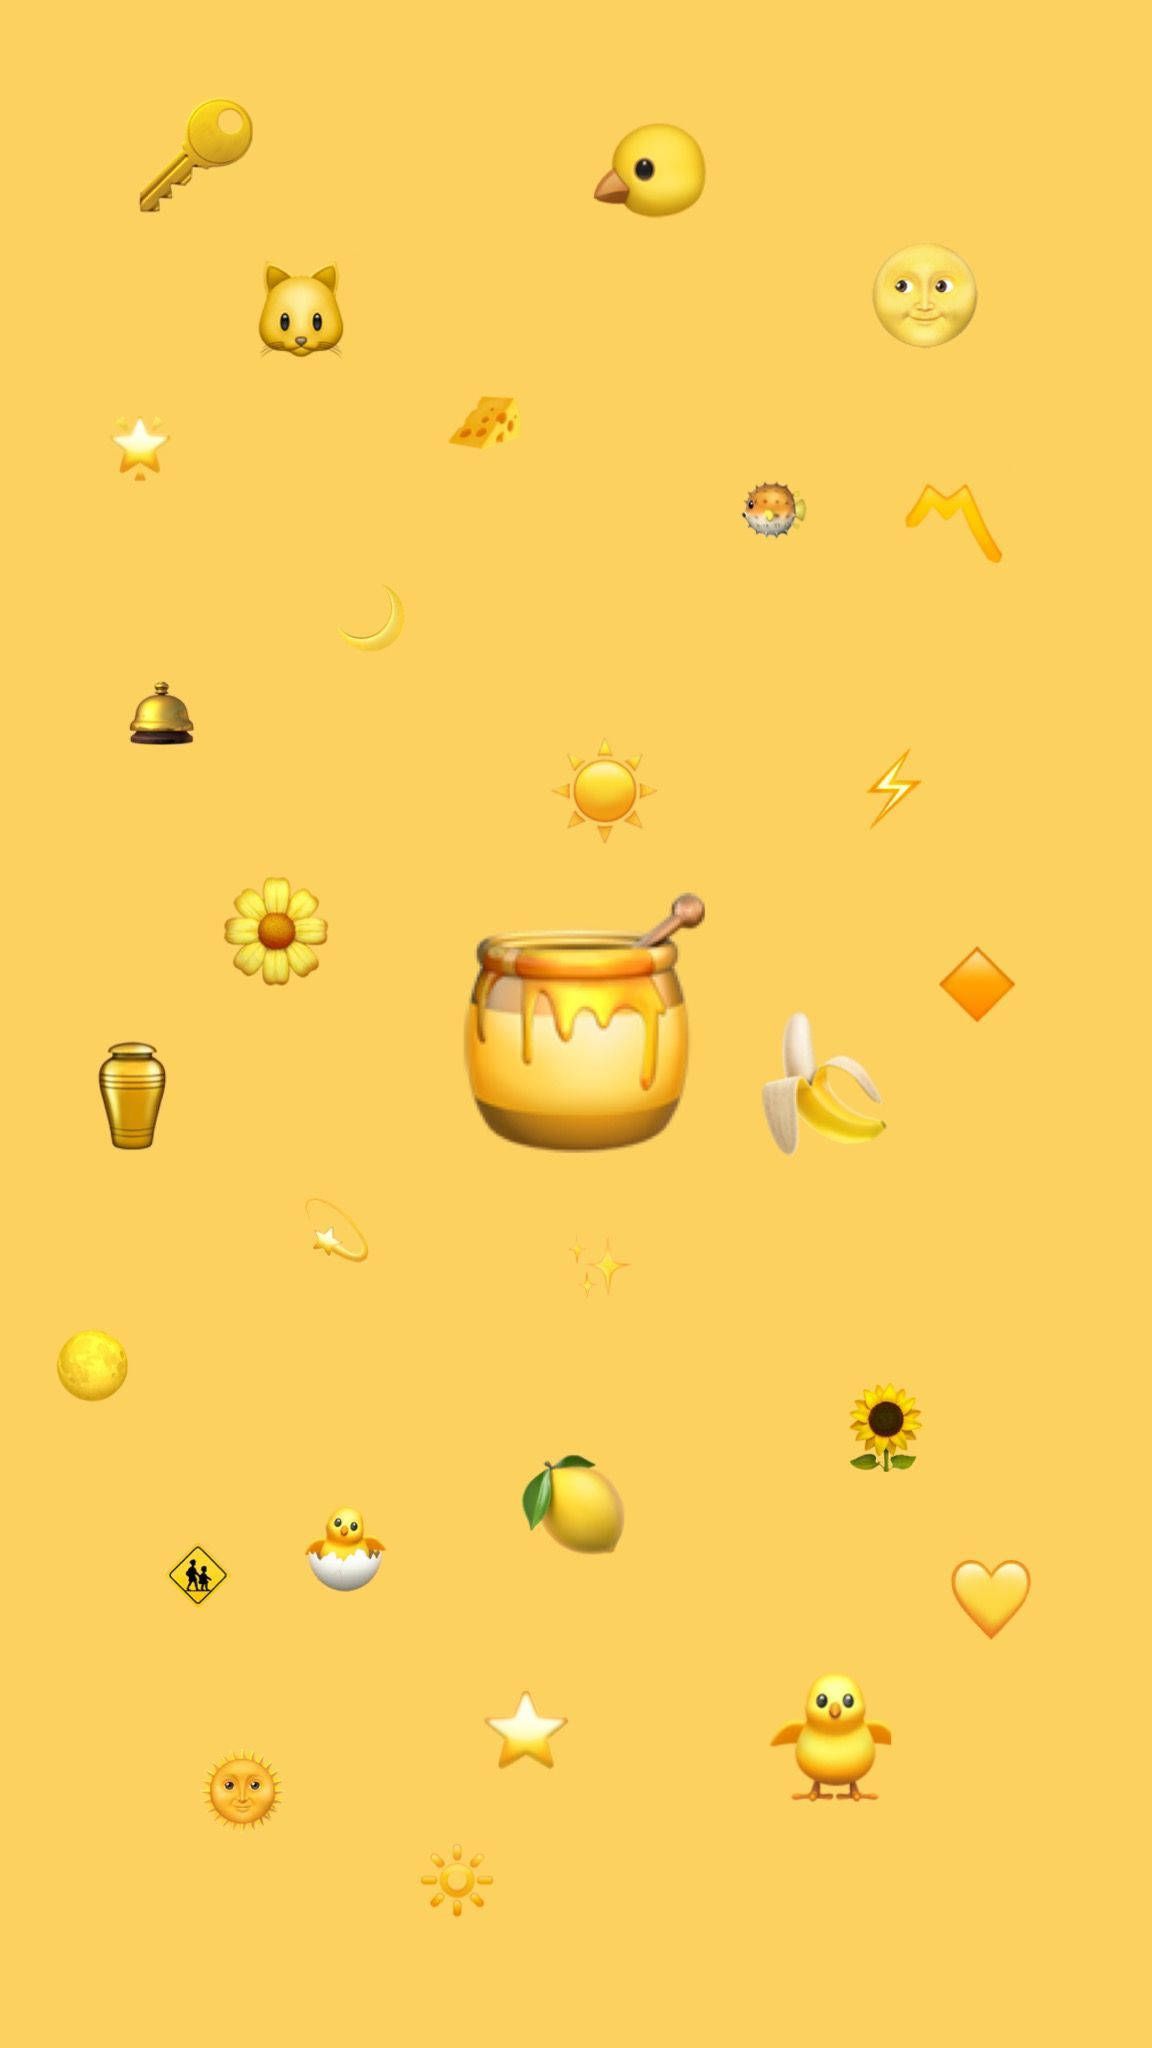 Download Honeybee Pot With Cute Yellow Emojis Wallpaper